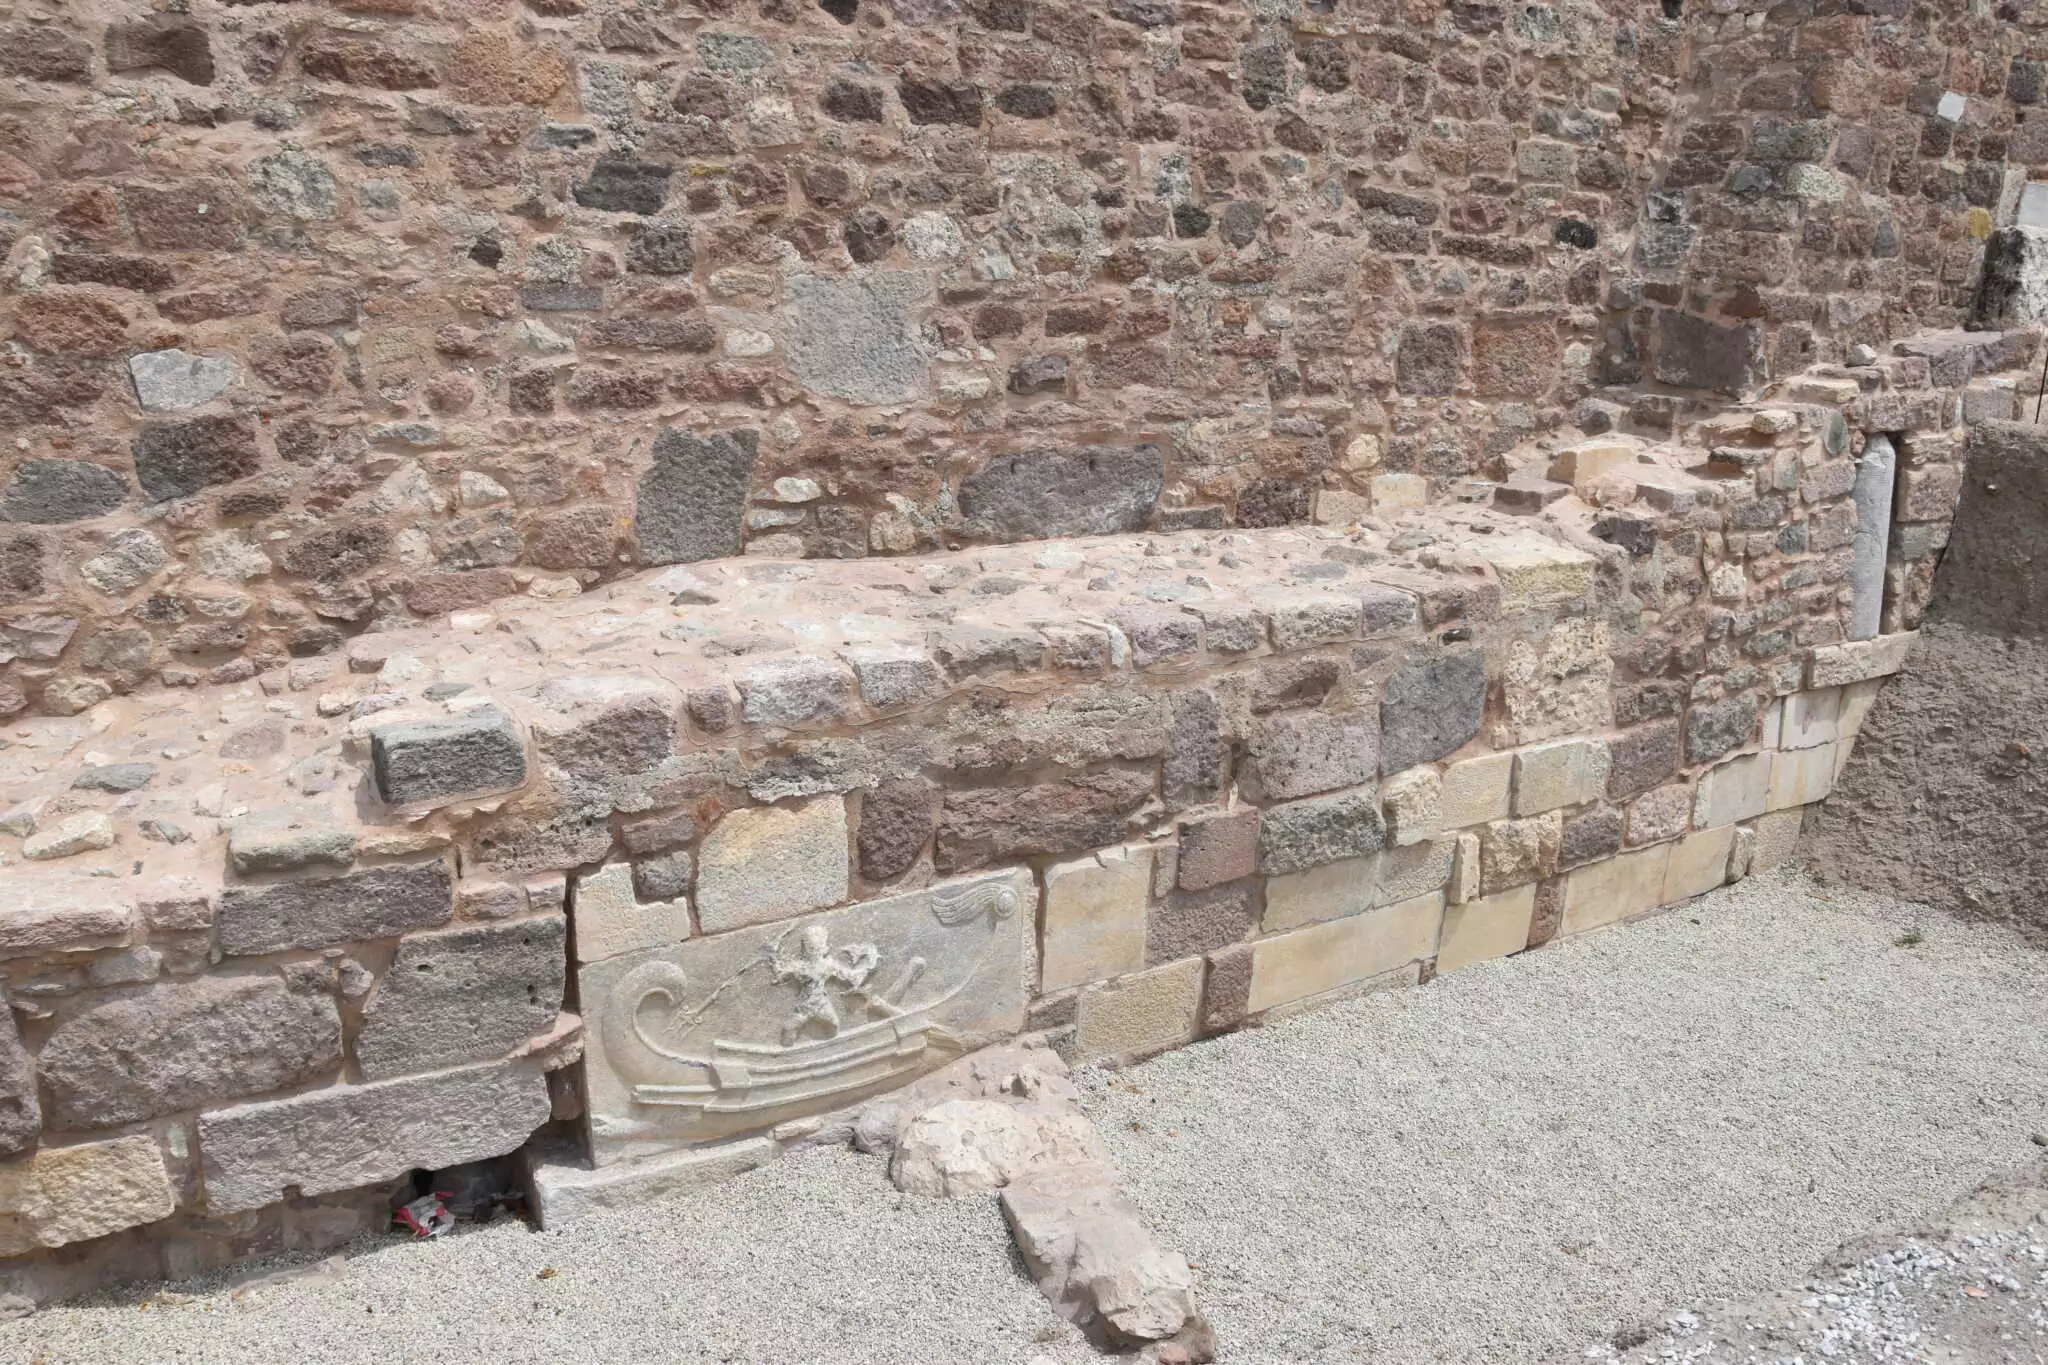 Μυτιλήνη: Αποκαλύφθηκαν τμήματα από τα αρχαία τείχη μετά από ανασκαφές και έργα 8 ετών